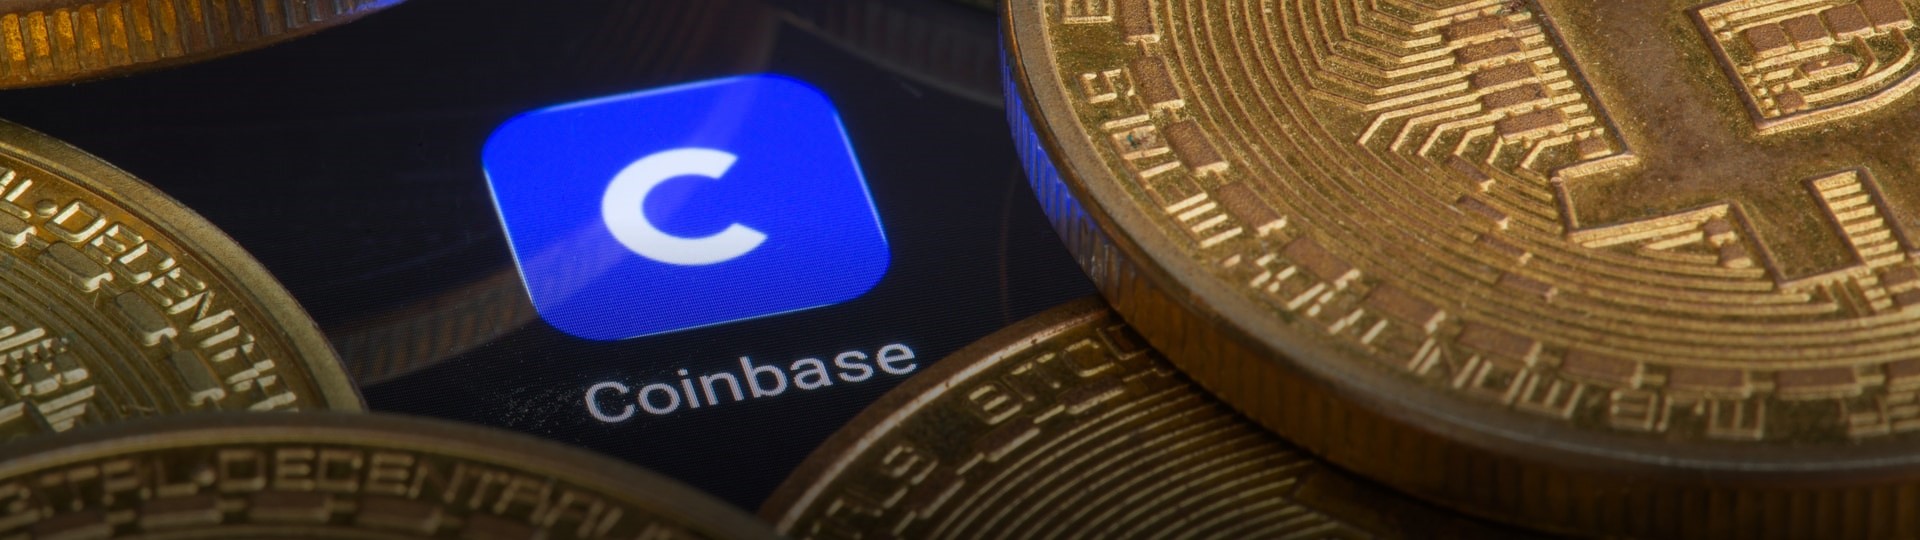 Regulátoři prý hrozí burze Coinbase žalobou kvůli plánu na úvěrový produkt